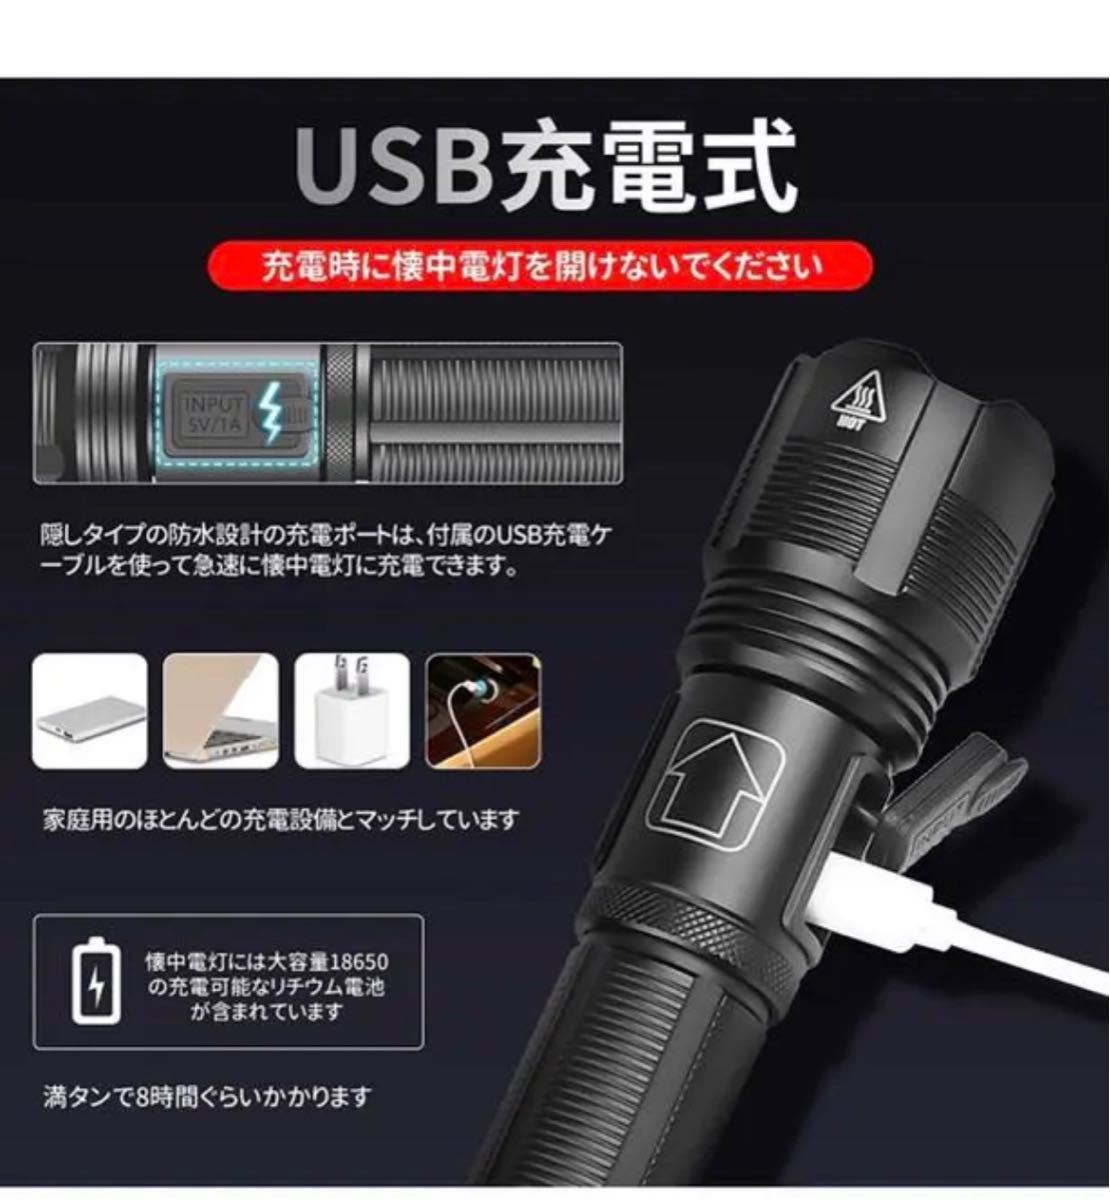 LED 懐中電灯 ハンディライト 超強力 軍用 強力 超高輝度 9000ルーメン USB充電式 